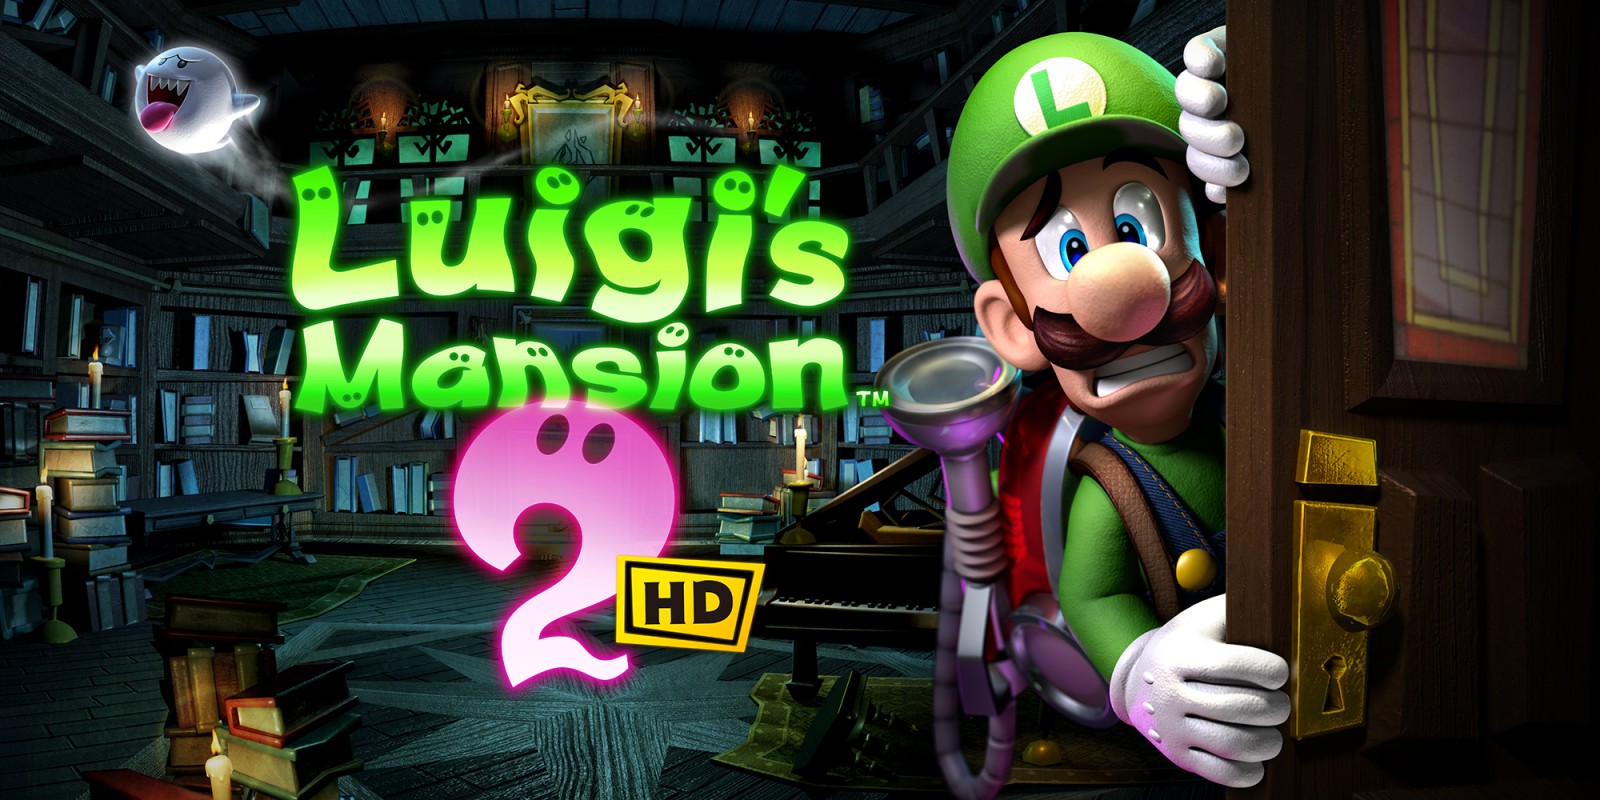 Schrik wakker met de Luigi’s Mansion 2 HD-trailer